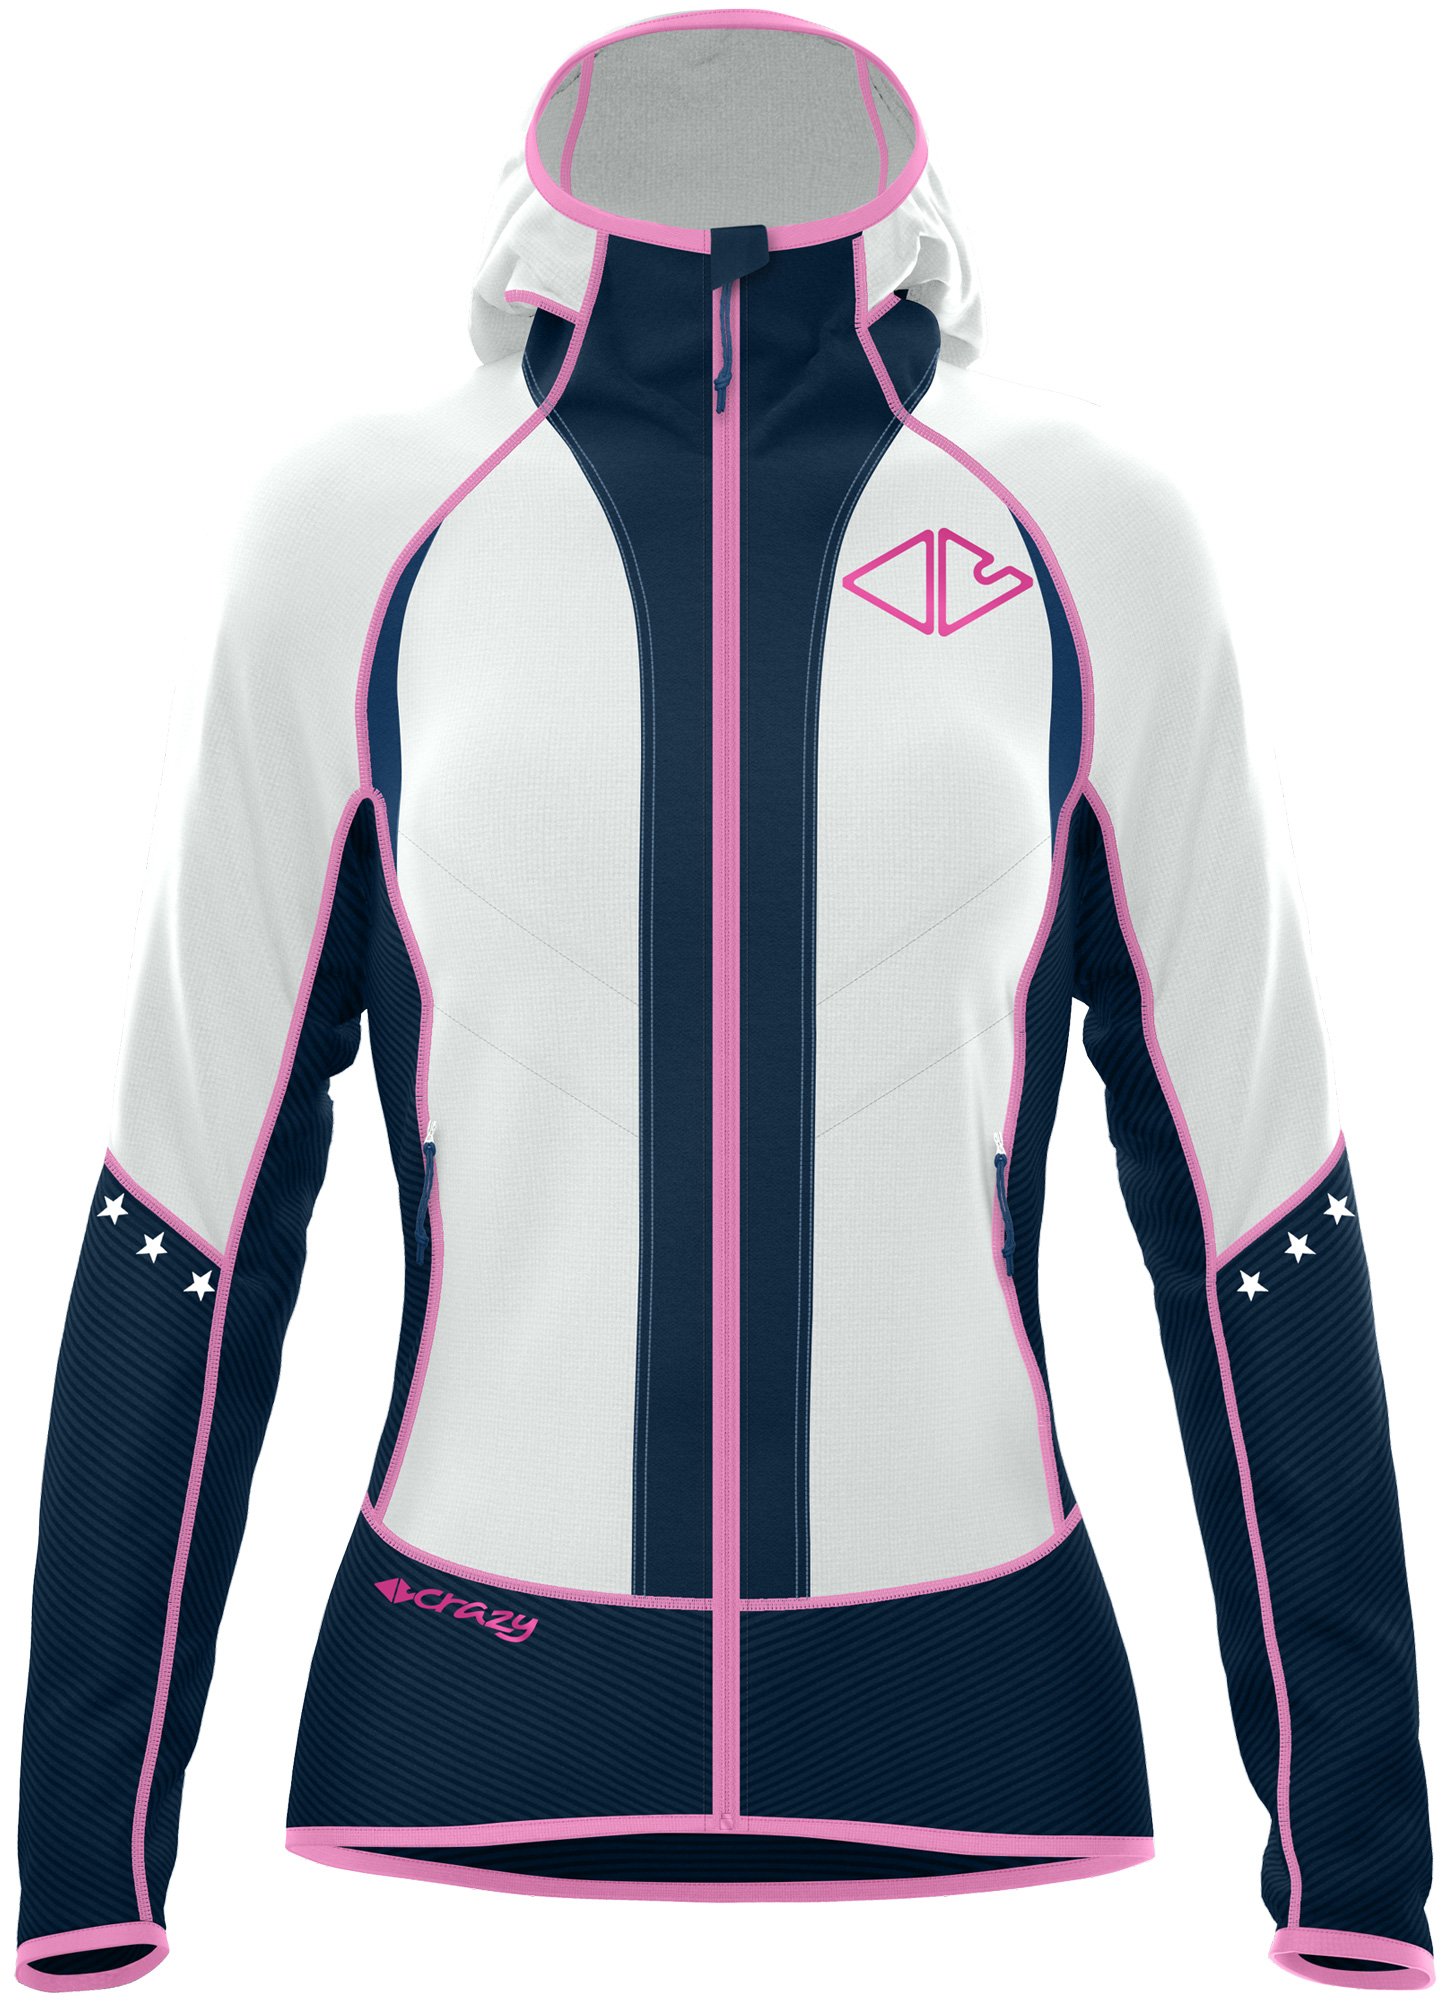 Jkt & Leichte Jacken kaufen - bei Women - Oxygen Crazy Idea Mid Layer Online Sport Gardena Light